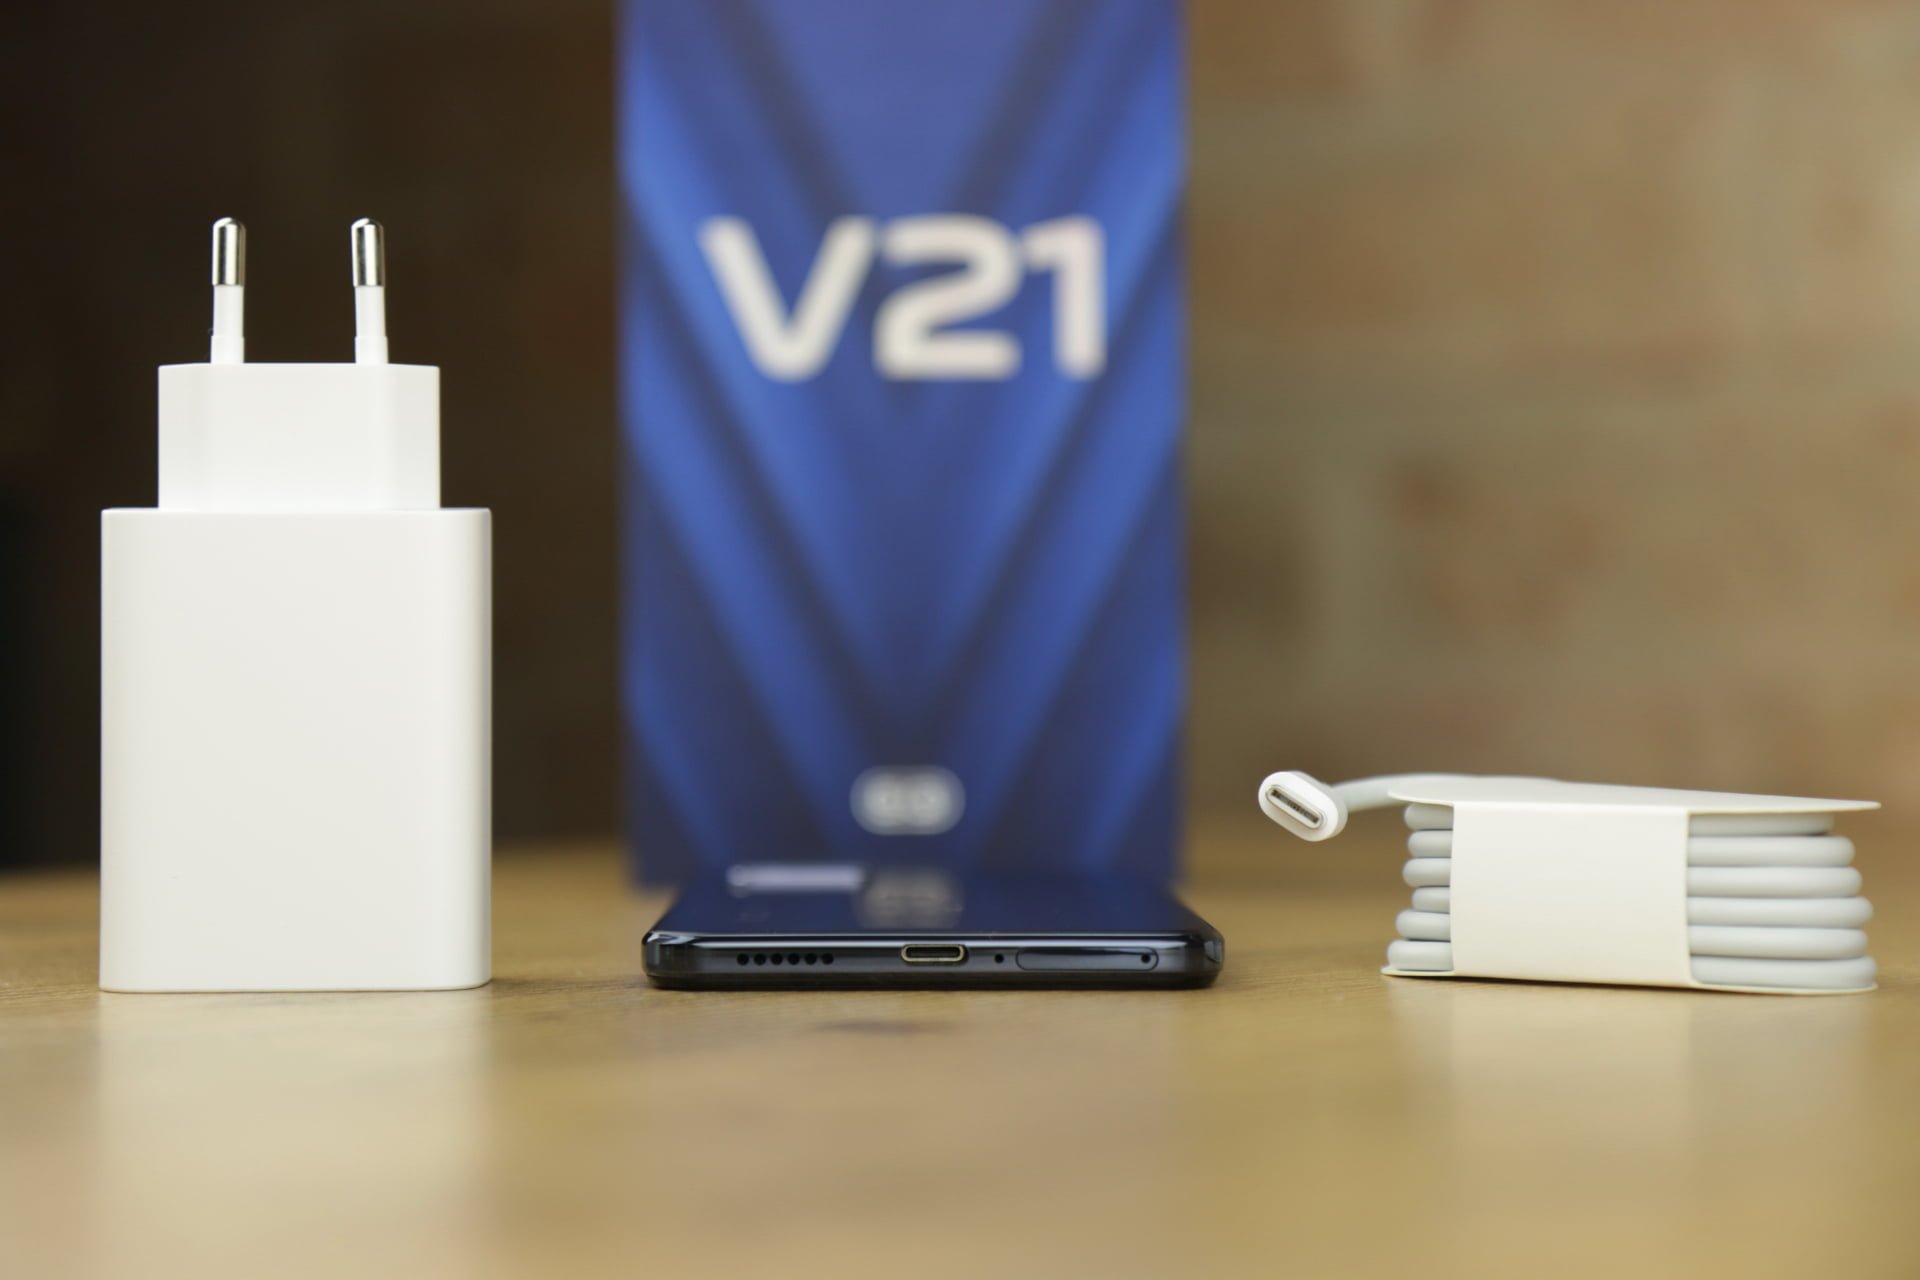 Vivo V21 5G recenzja test